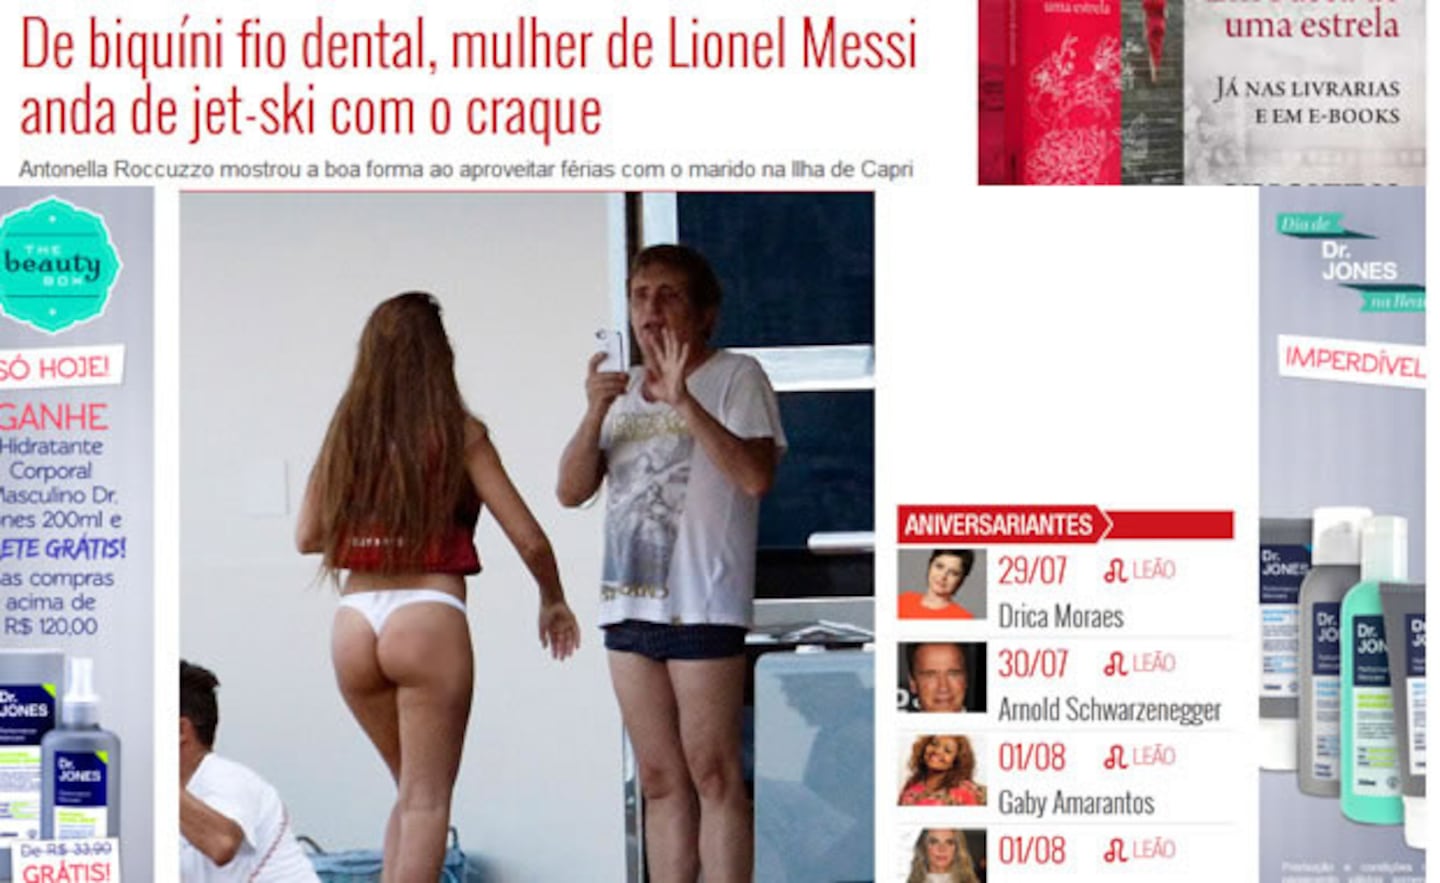 Antonella Roccuzzo y Lionel Messi, en Capri. (Capturas: revistaquem.globo.com)